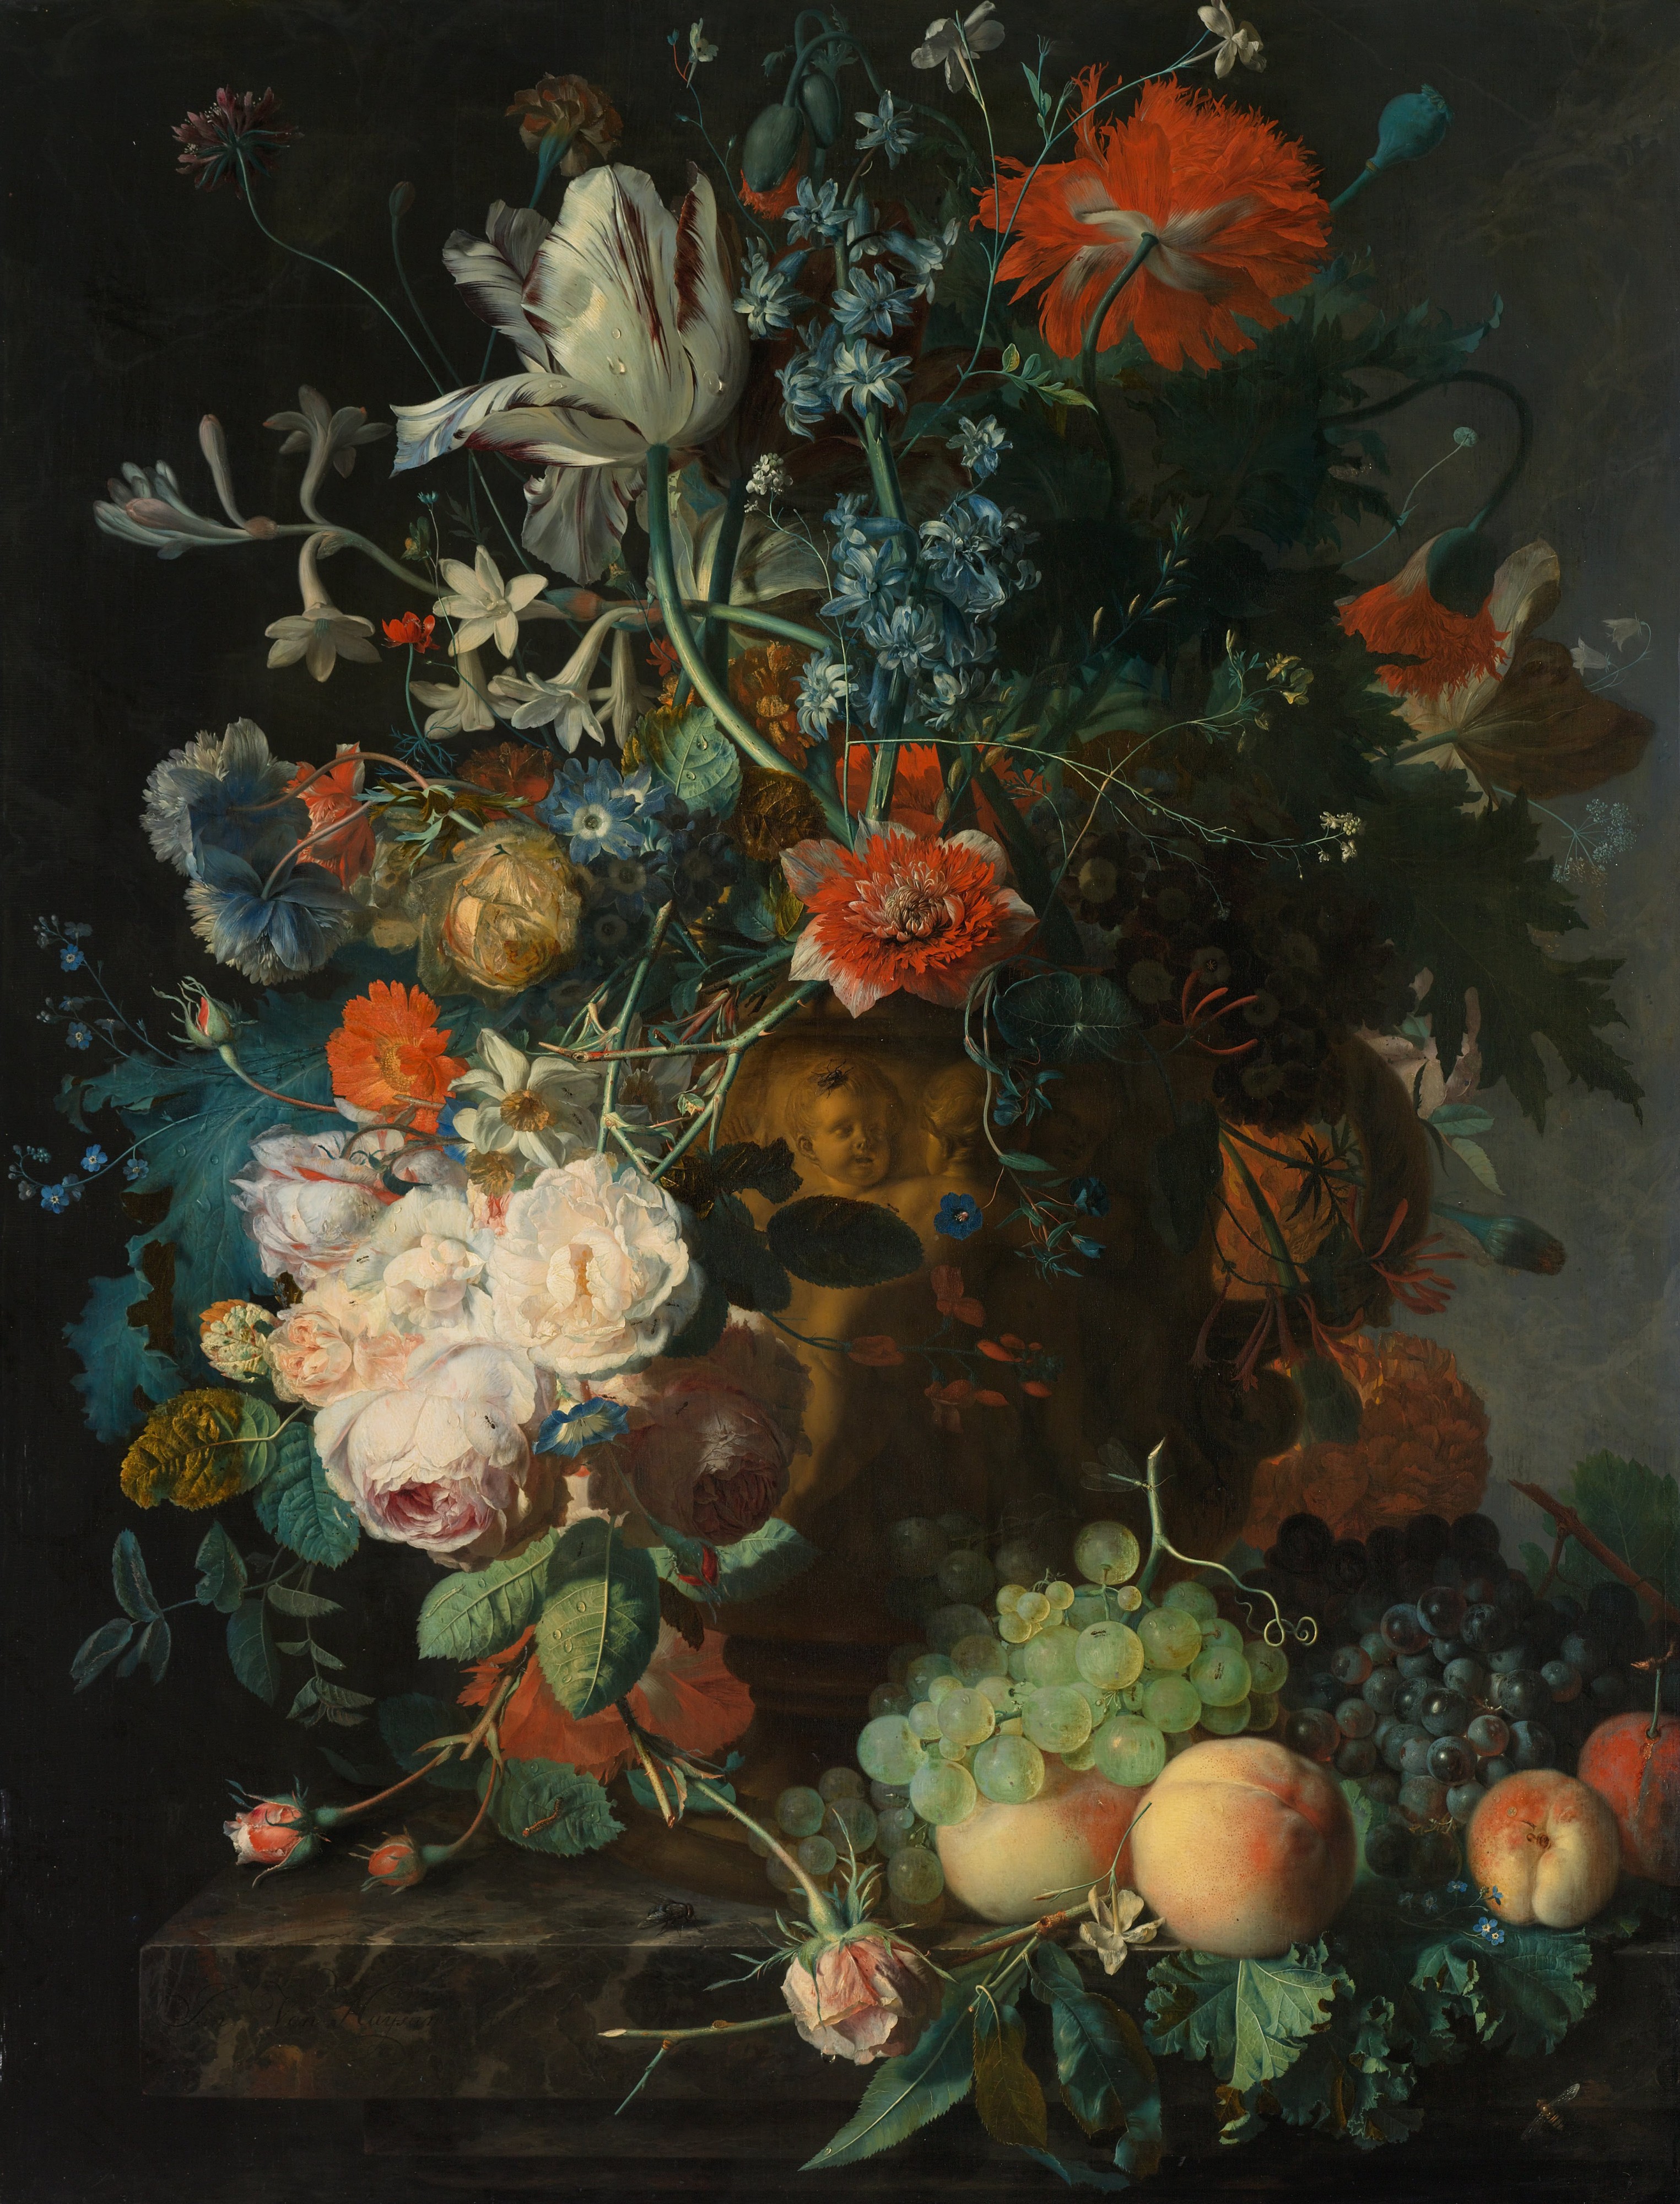 Jan van Huysum - Stilleven met bloemen en vruchten - Google Art Project